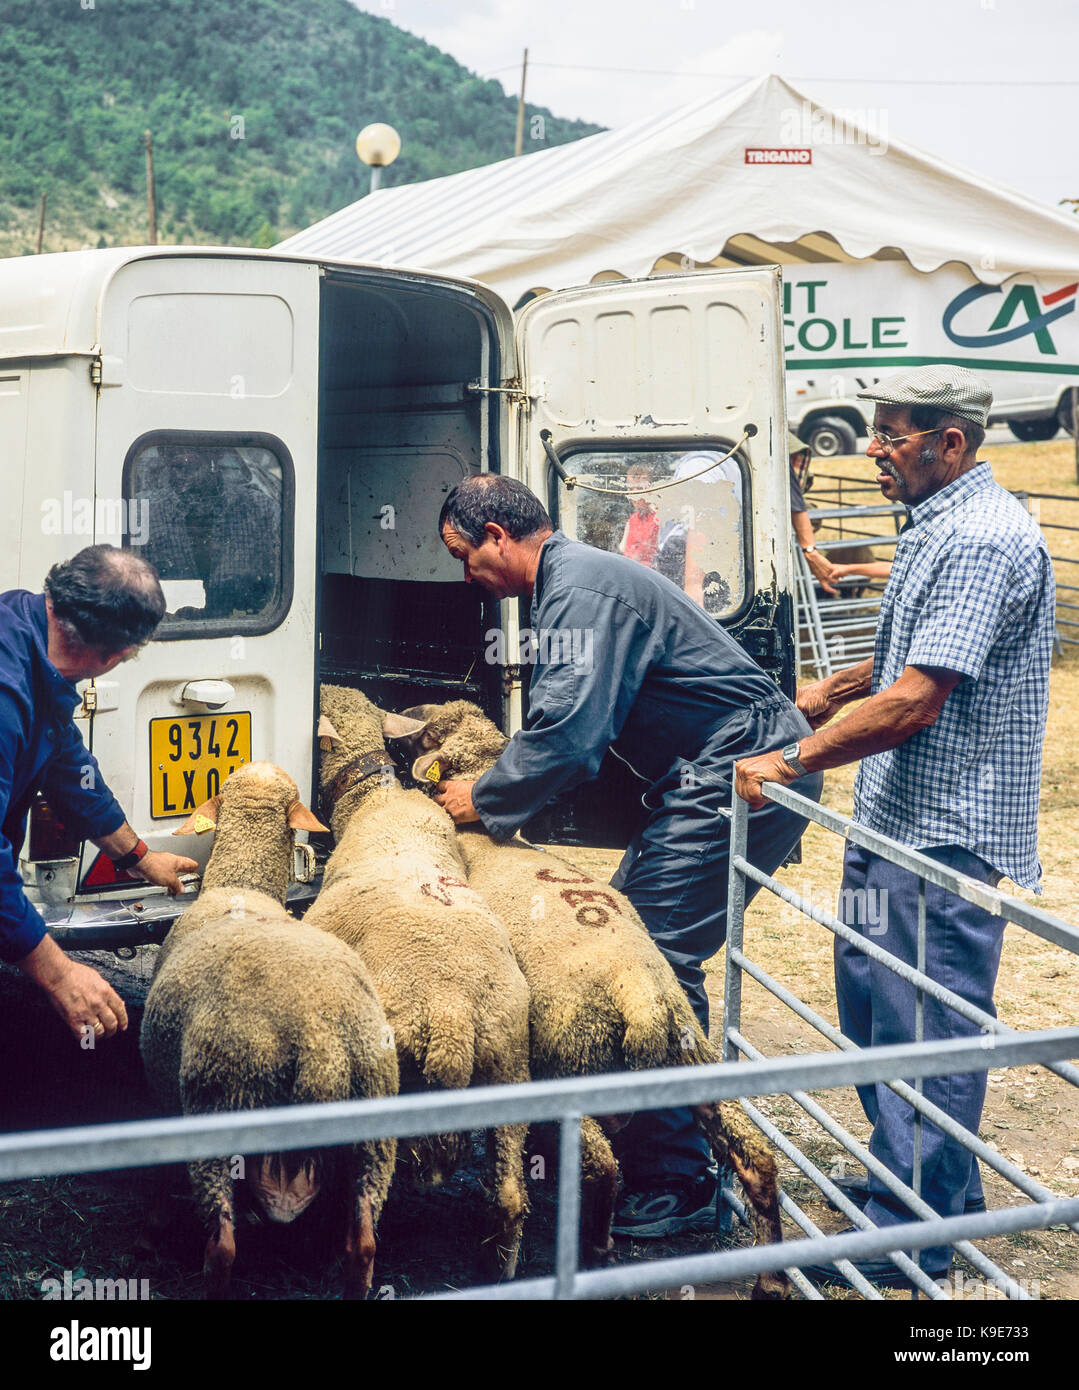 Les agriculteurs chargeant des moutons dans un camion, marché annuel du bétail, Montfroc, Drôme, Provence,France, Europe Banque D'Images